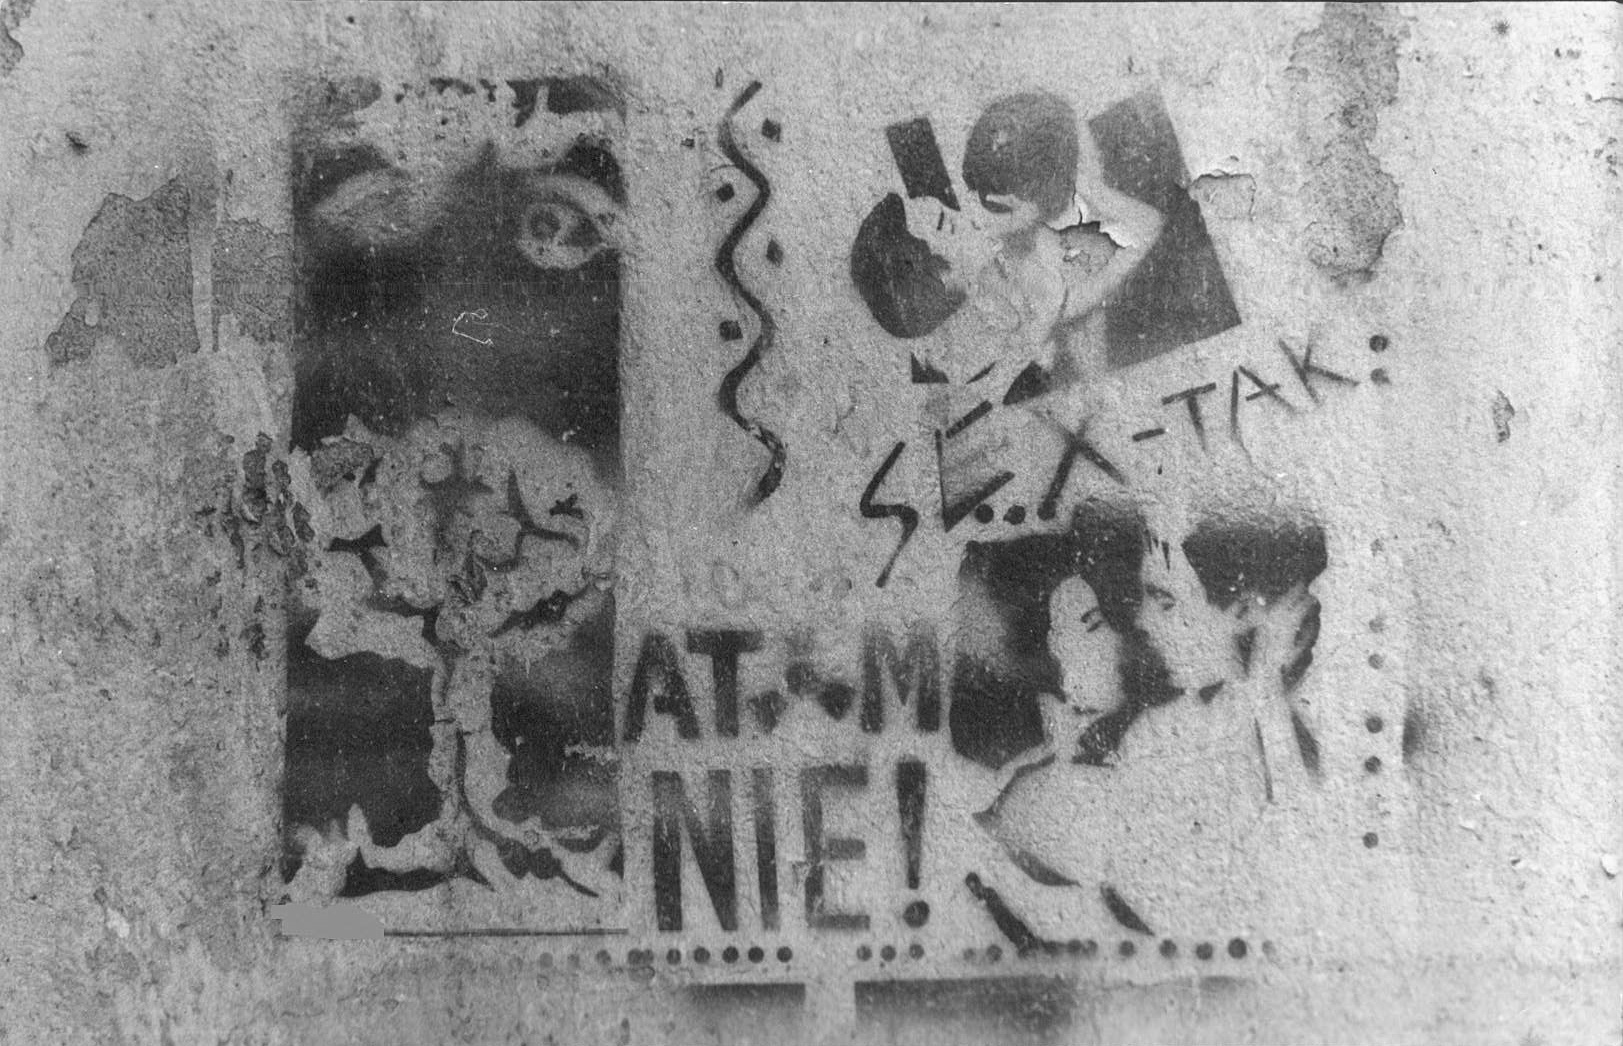 Graffiti, Łódź, spring 1990